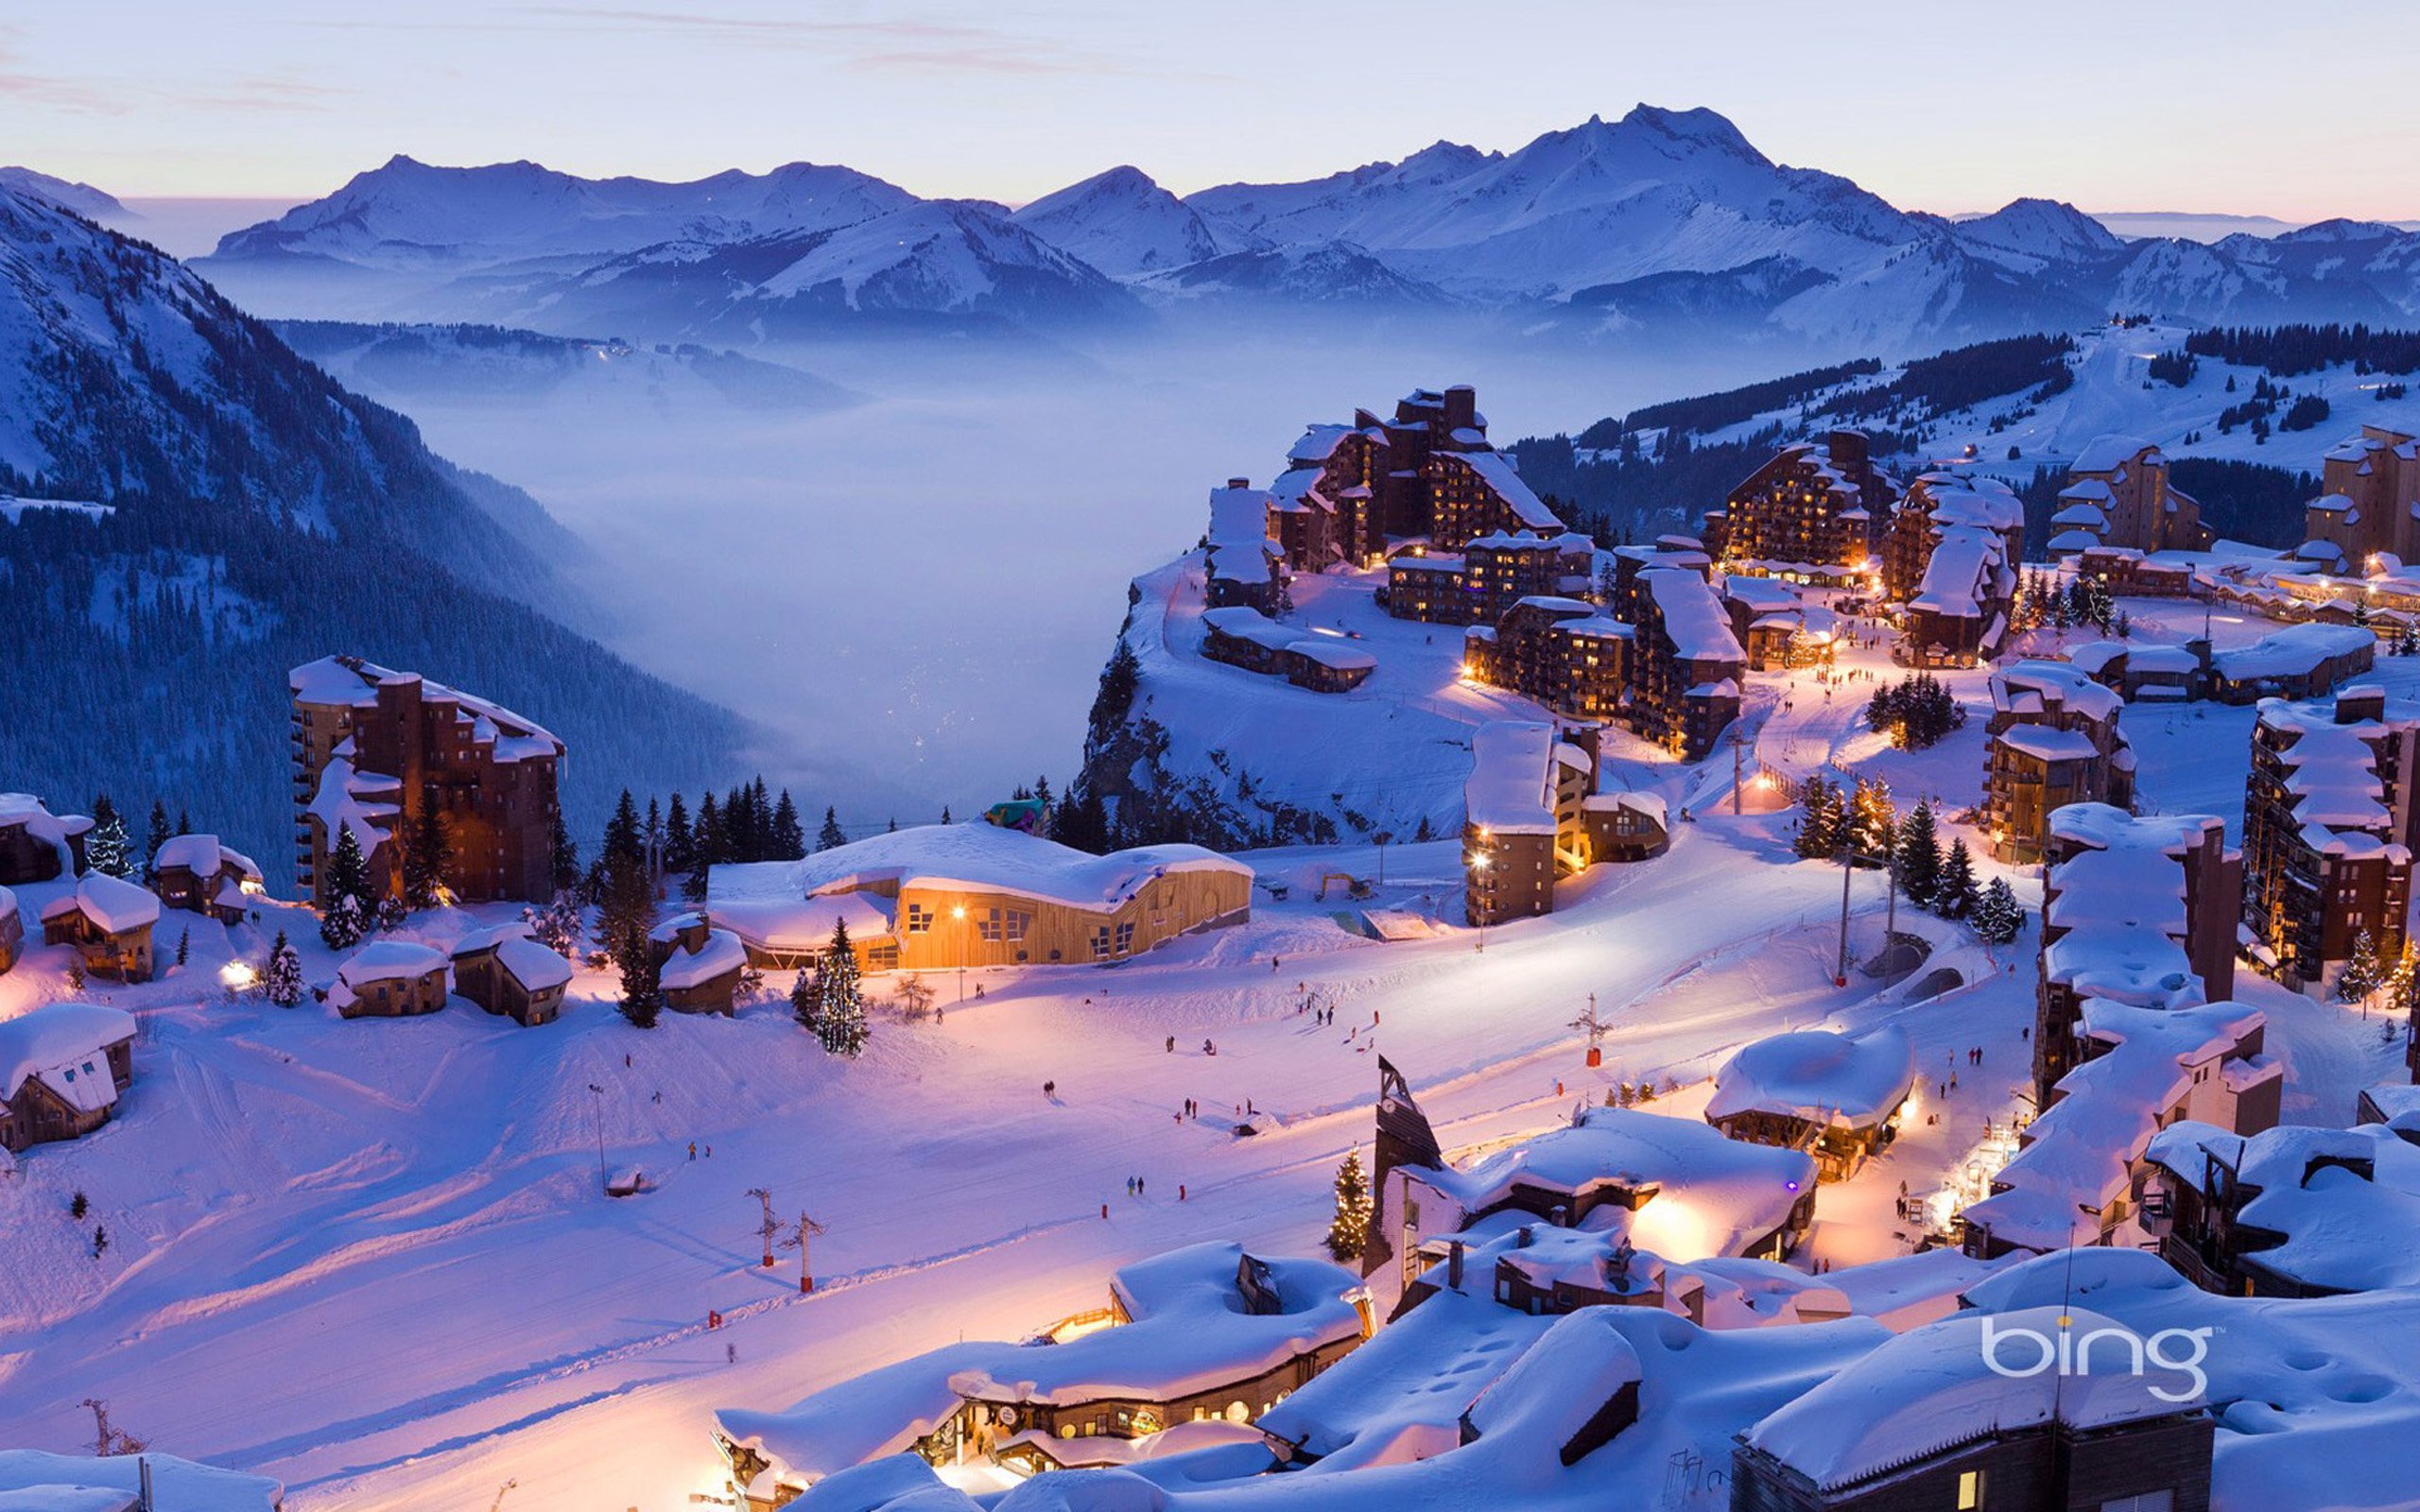 X village. Морзин Авориаз. Авориаз горнолыжный курорт во Франции. Швейцария Альпы горнолыжка. Альпы Франция Горная деревня.